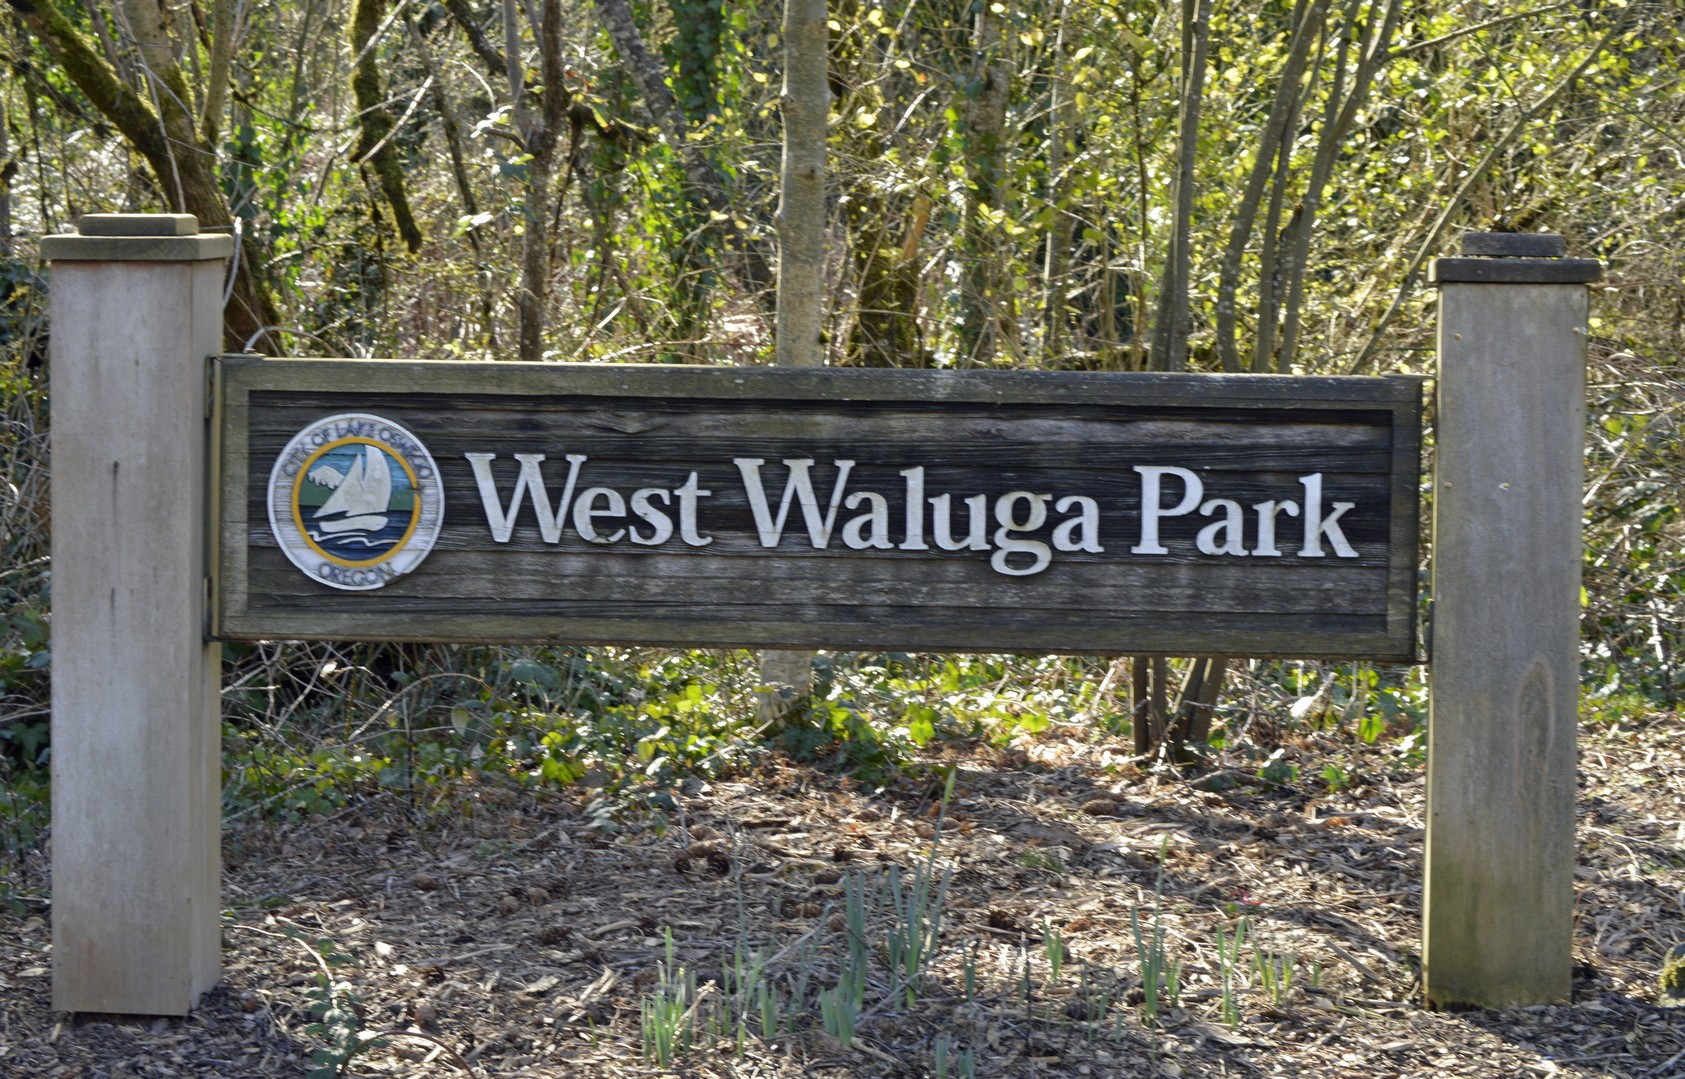 4-web-west-waluga-park-lake-oswego-oregon-clackamas-county-the-kelly-group-real-estate